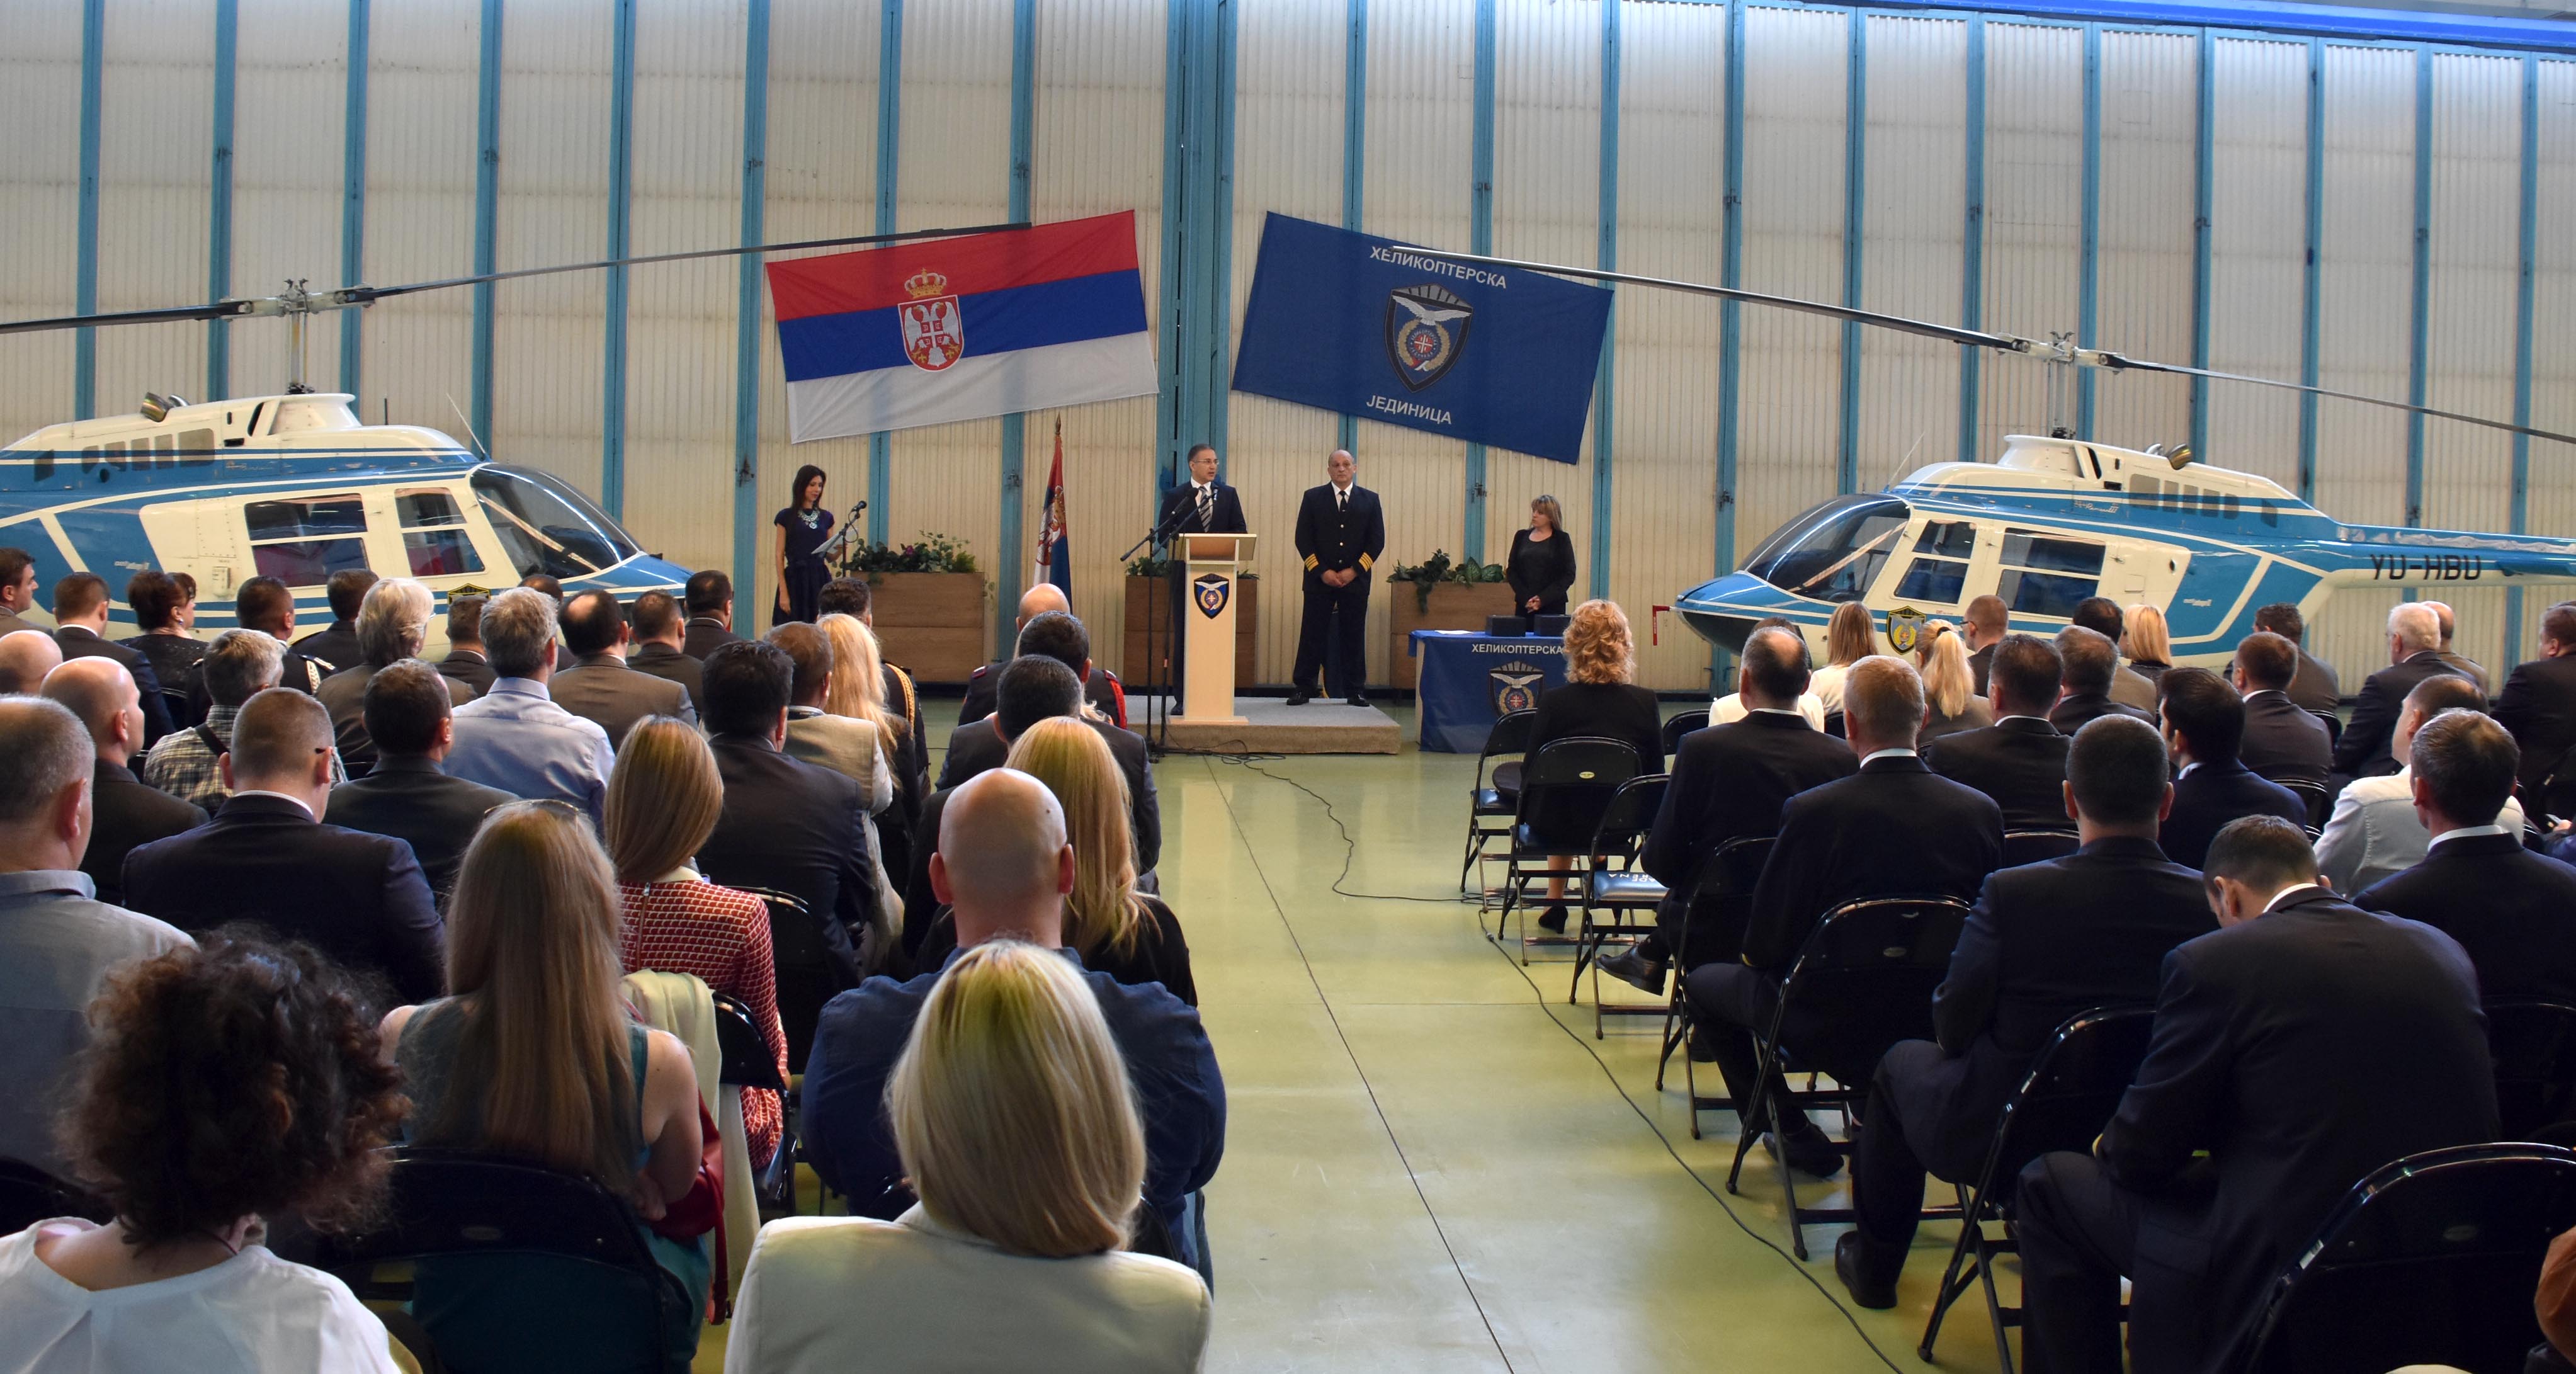 Stefanović: Helikopterska jedinica MUP-a jedna od najelitnijih jedinica u Republici Srbiji i regionu